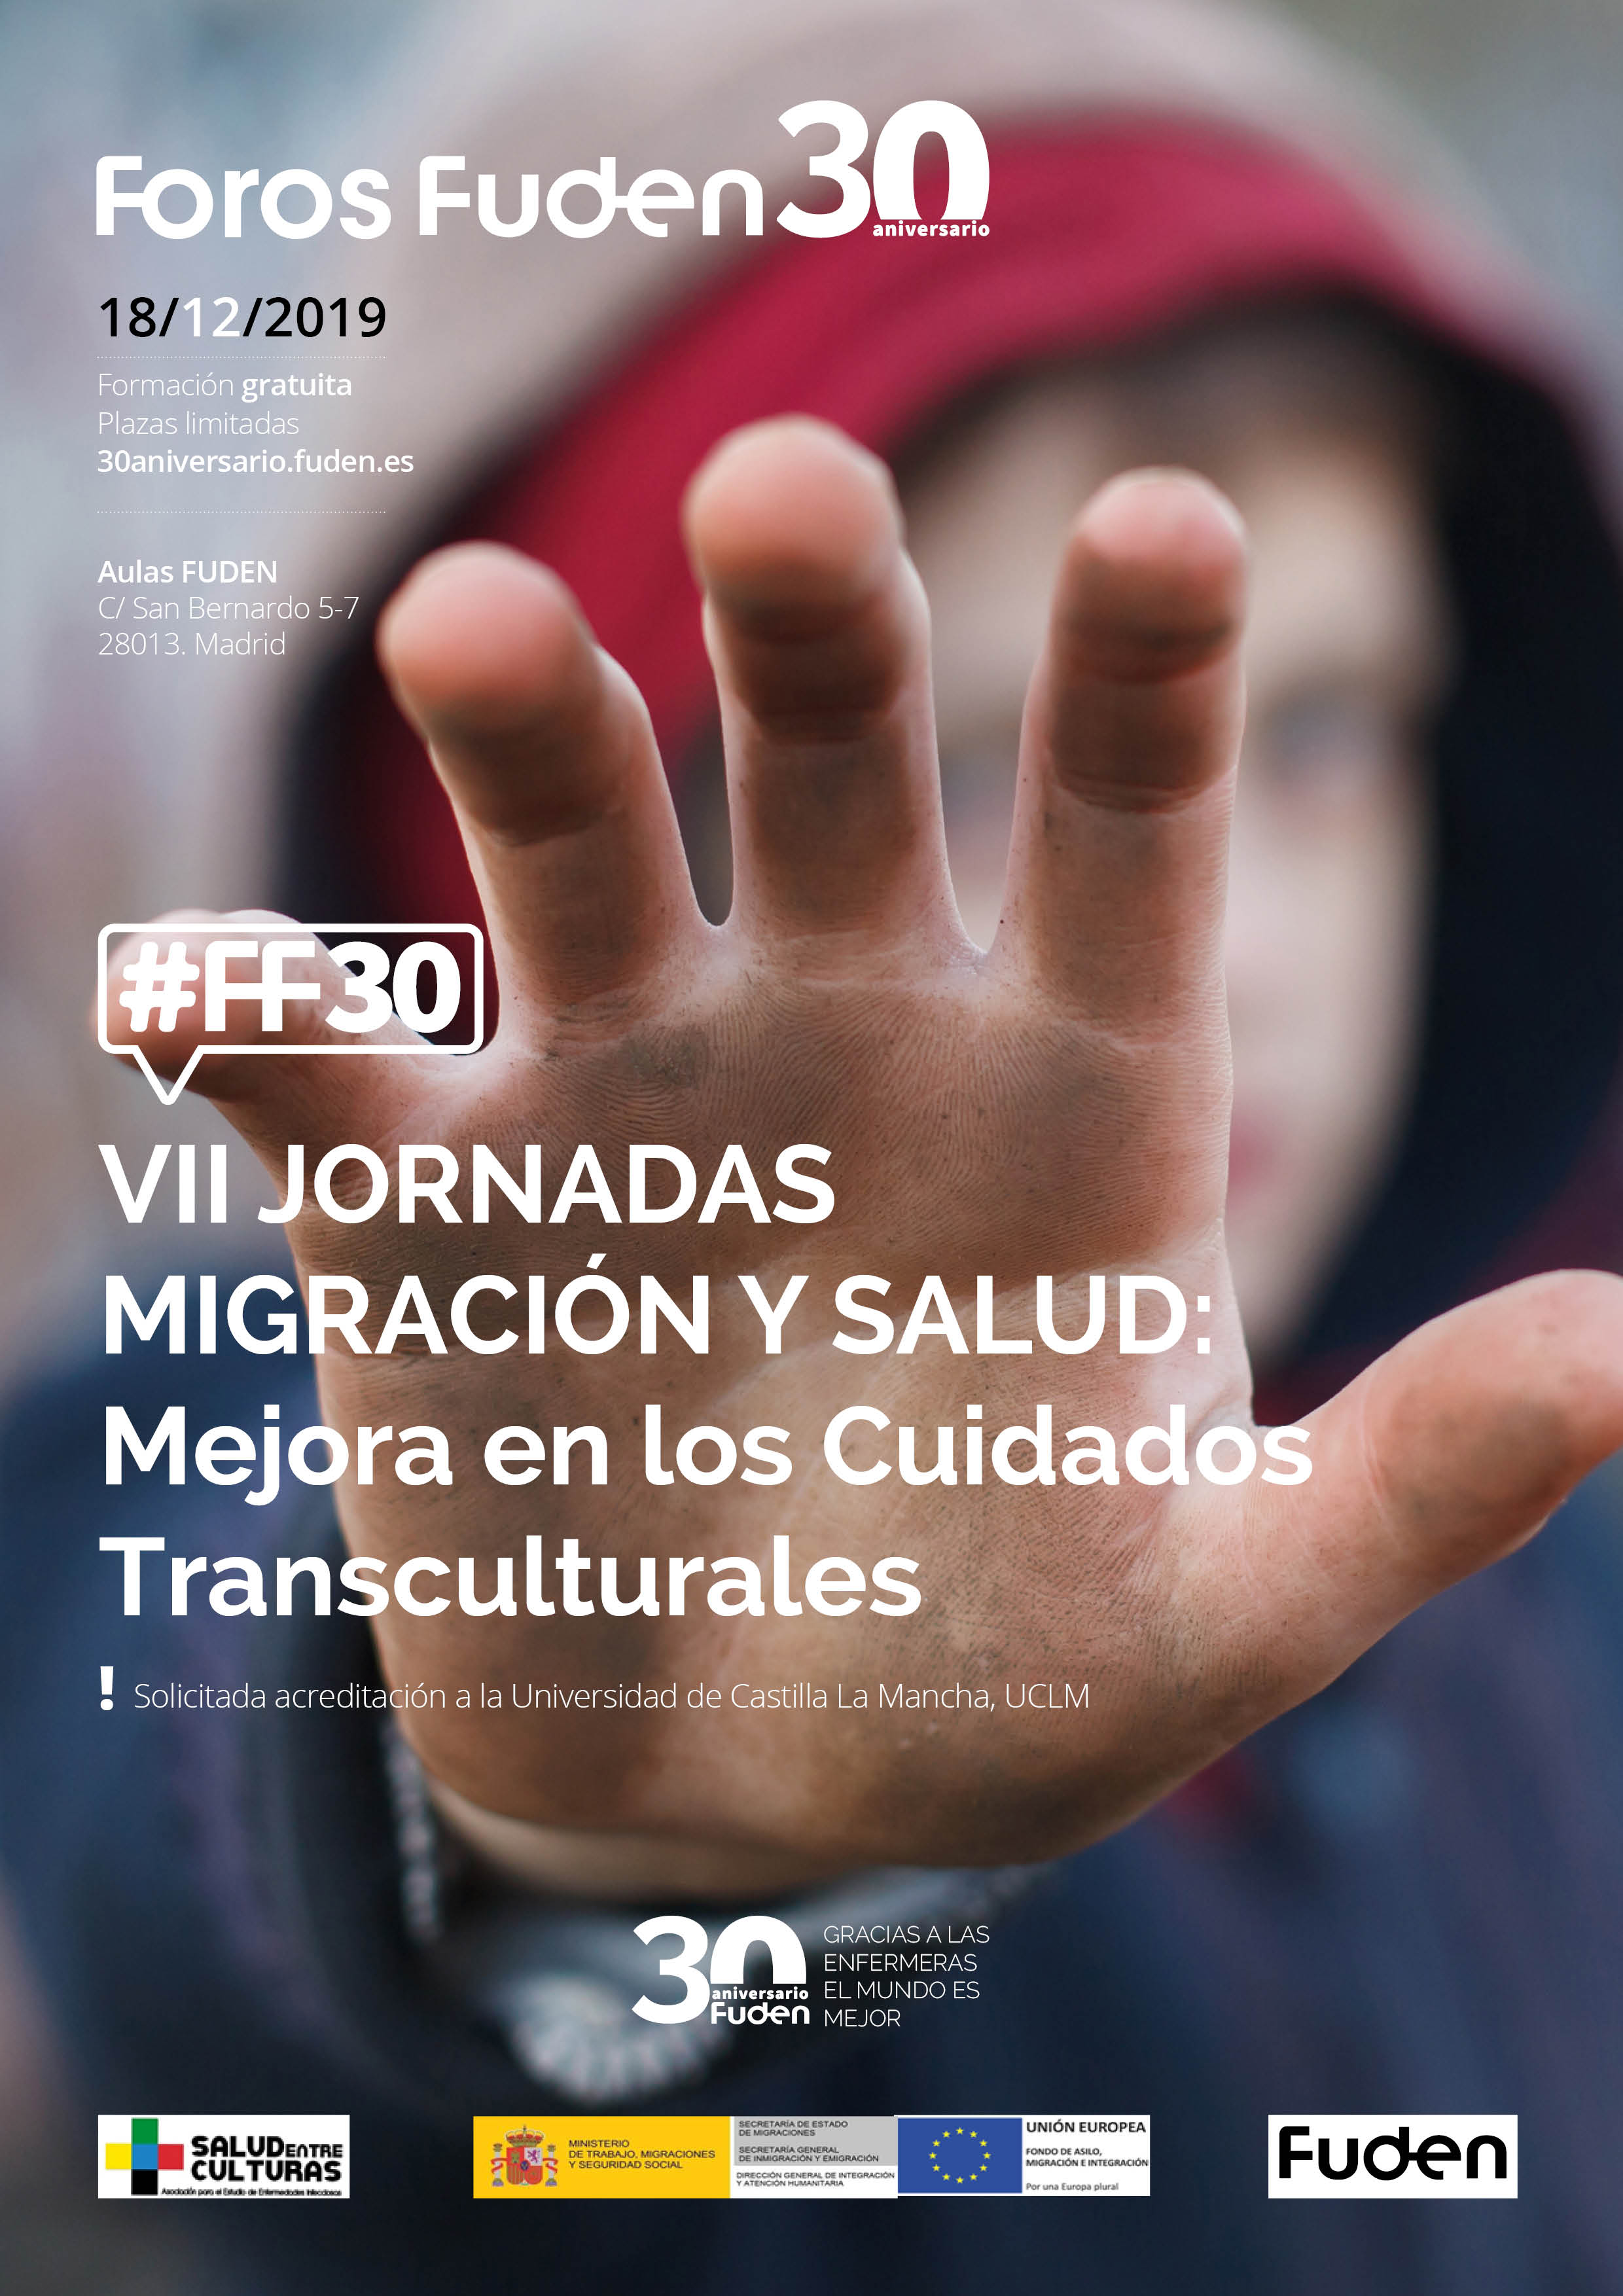 Foro Fuden. VII Jornada migración y salud: mejora en los cuidados transculturales 